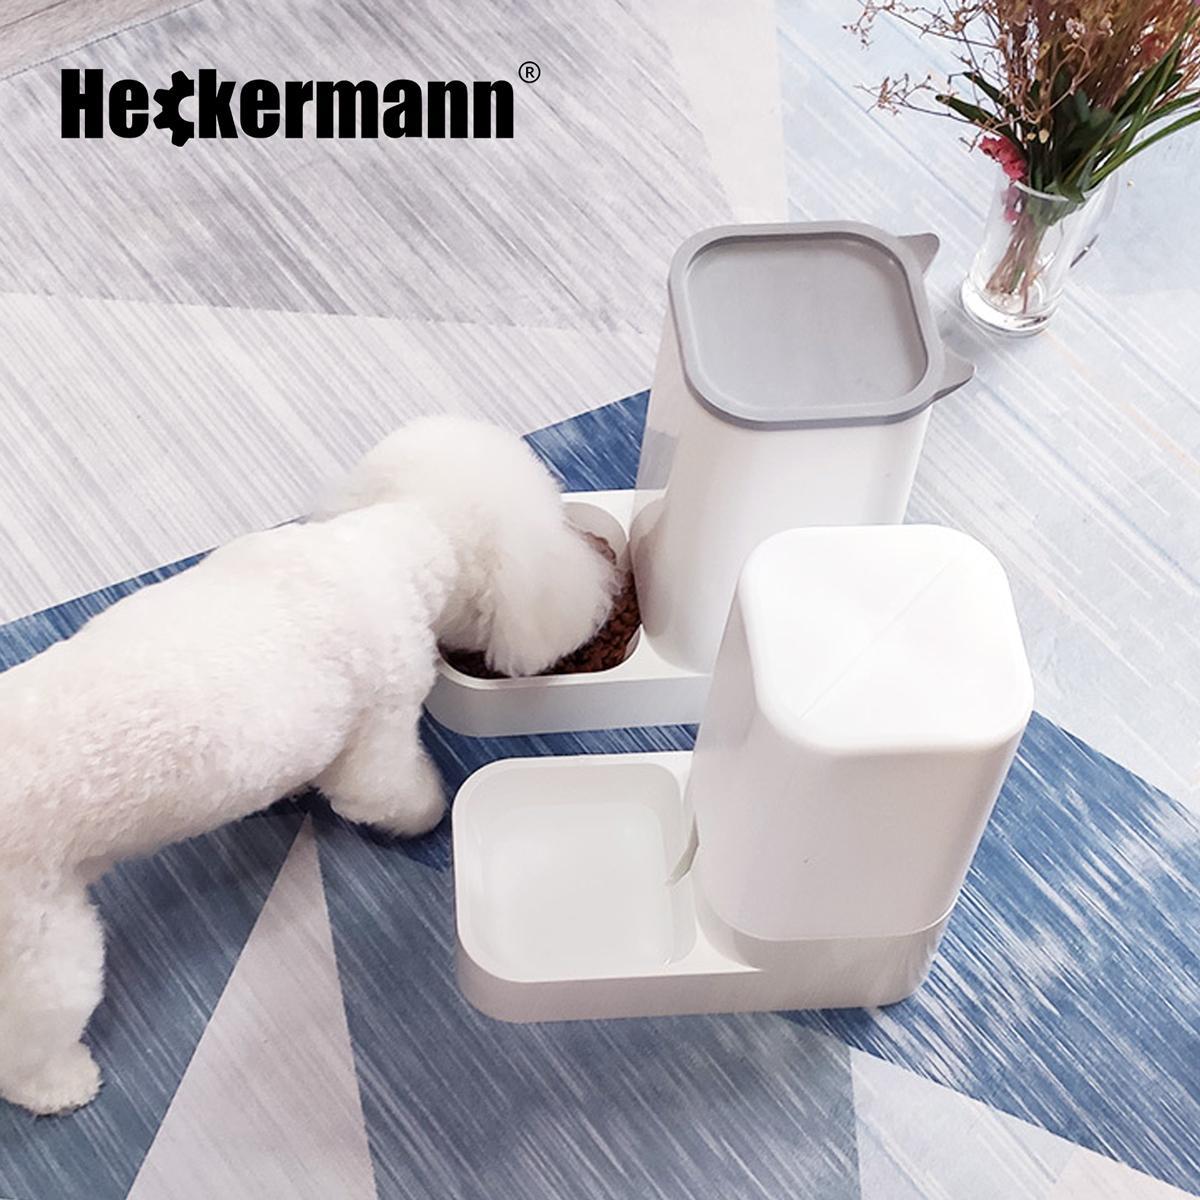 Poidło i dozownik podajnik karmy dla zwierząt Heckermann 3 Full Screen